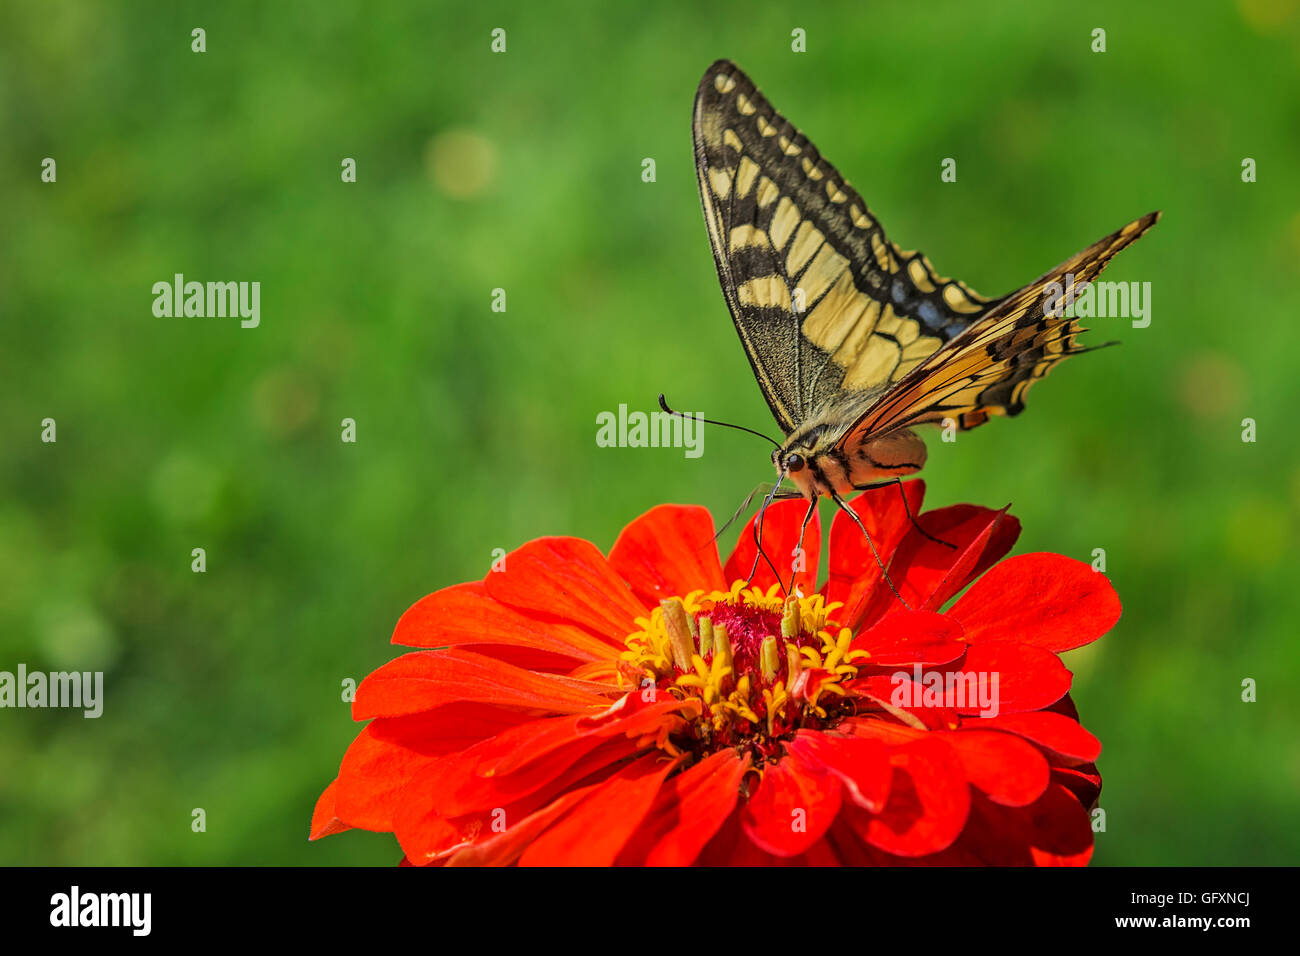 Papillon machaon (Papilio machaon) un papillon rare de la Famille des Papilionidae sur une fleur rouge Banque D'Images